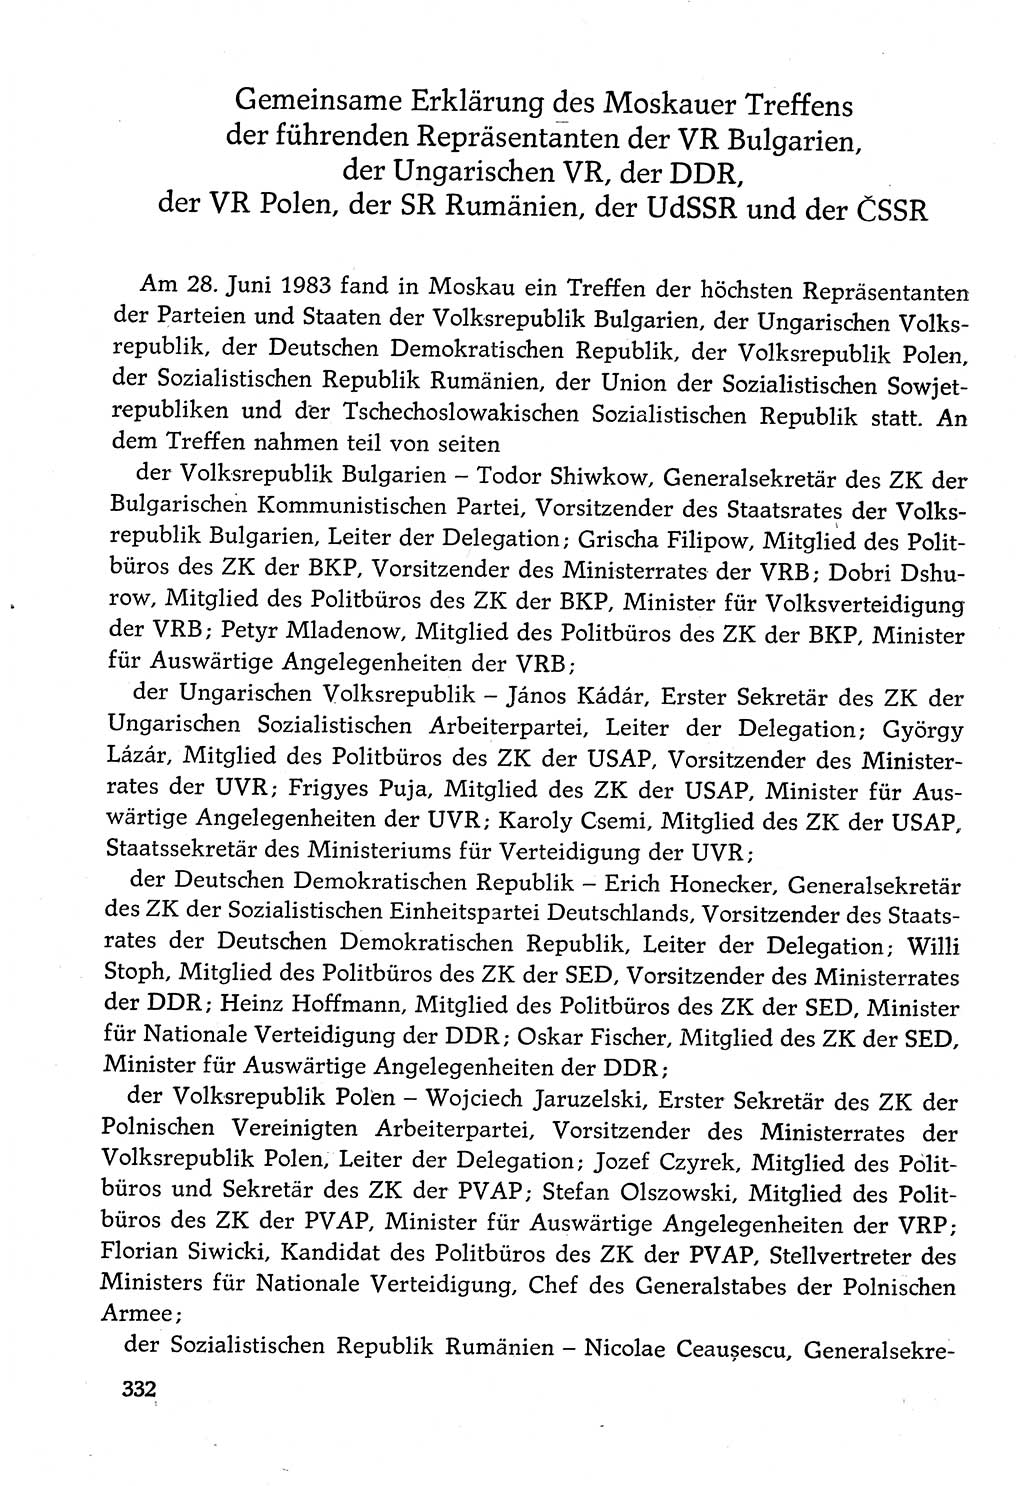 Dokumente der Sozialistischen Einheitspartei Deutschlands (SED) [Deutsche Demokratische Republik (DDR)] 1982-1983, Seite 332 (Dok. SED DDR 1982-1983, S. 332)